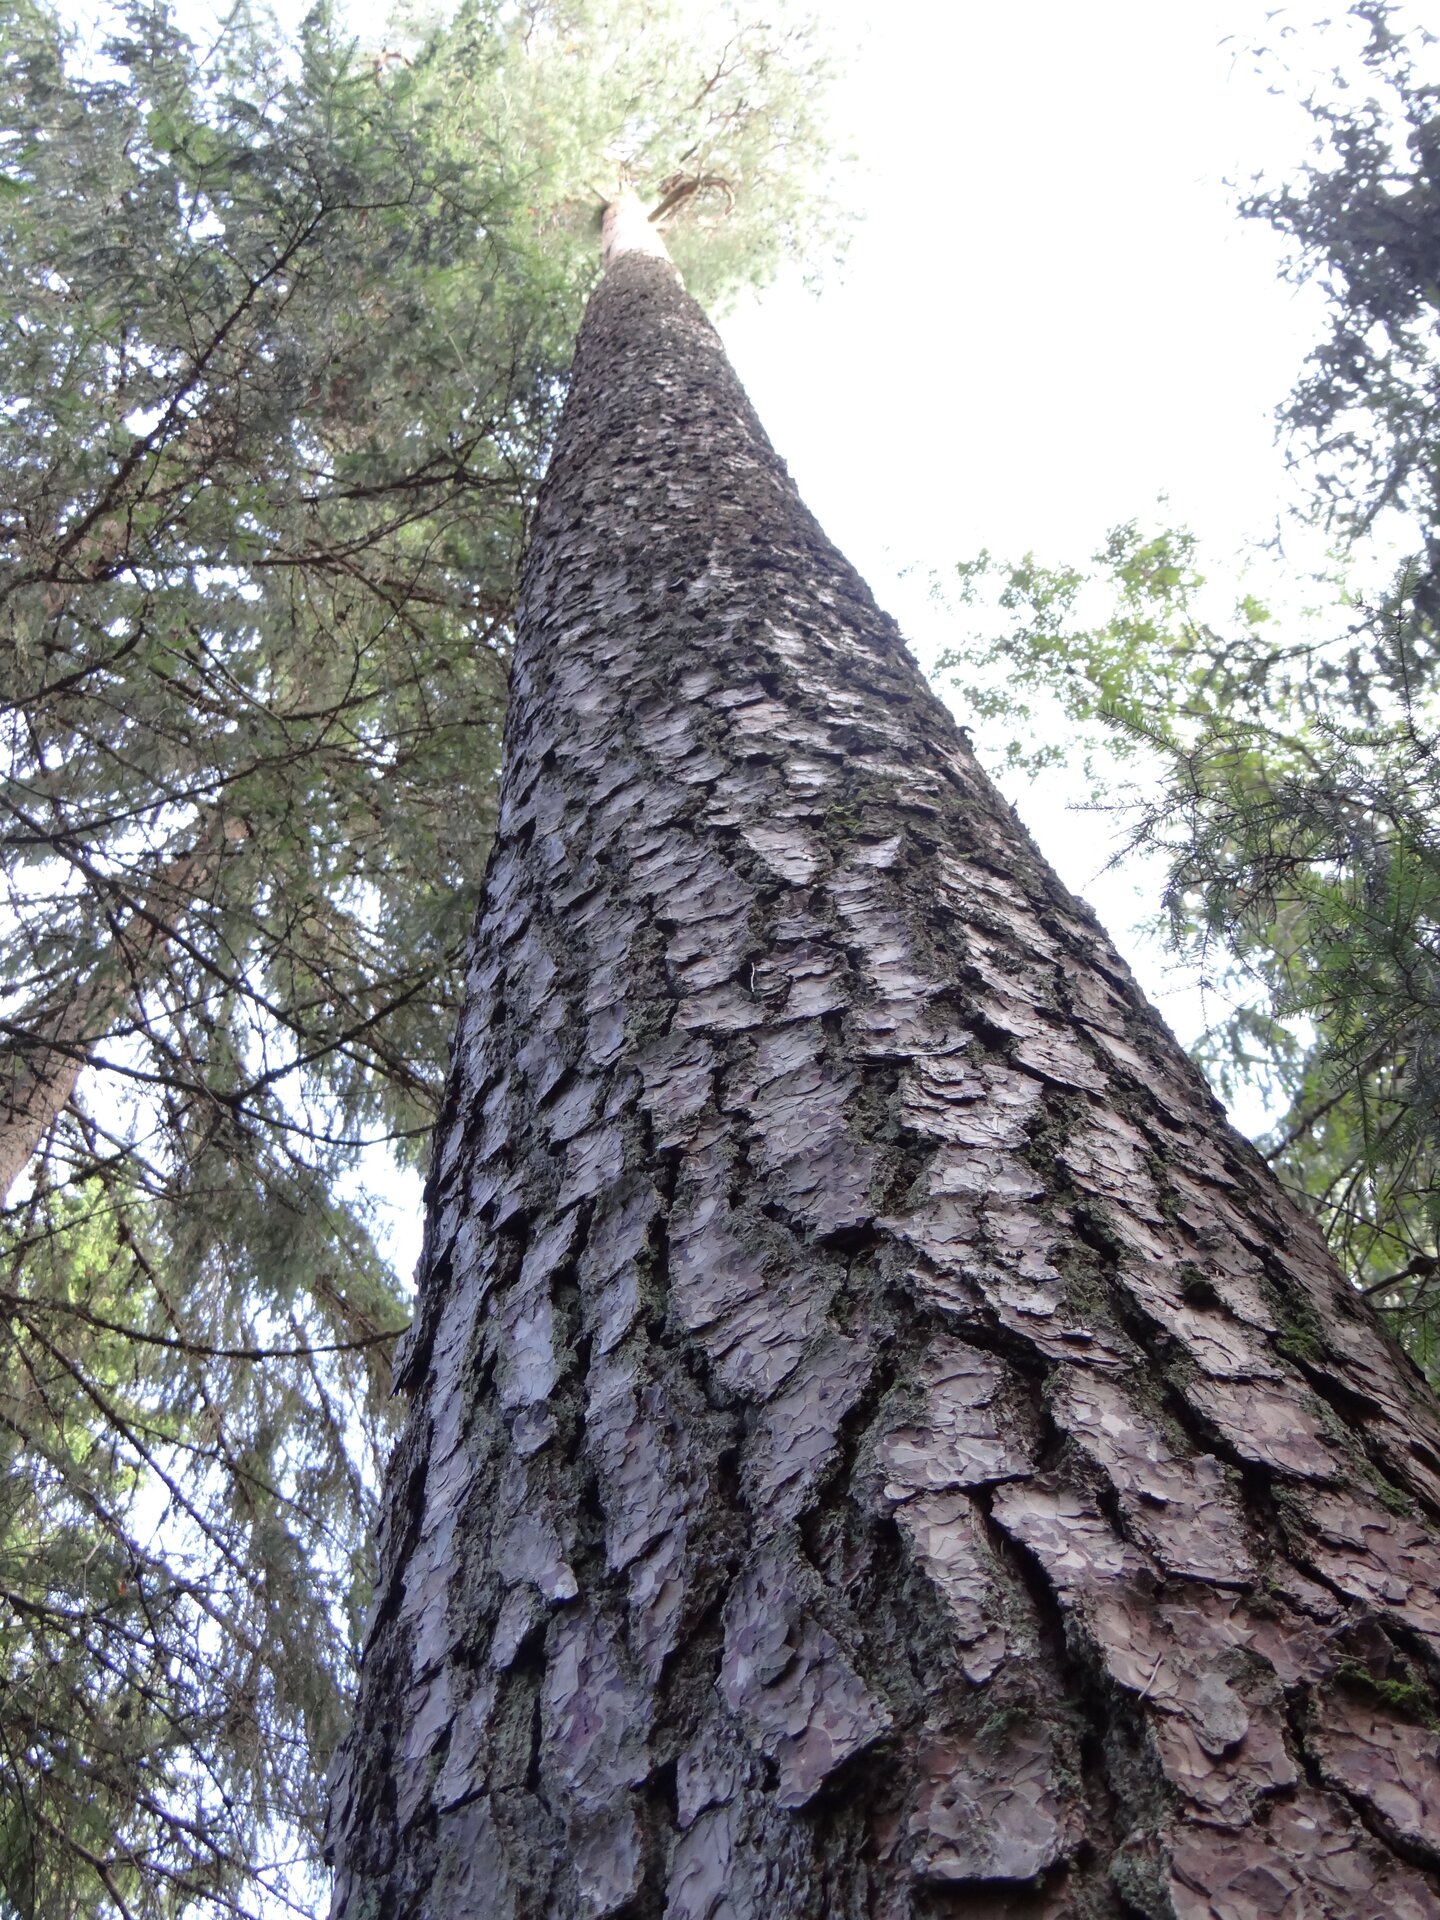 Eesti suurim puu, Eesti vanim puu